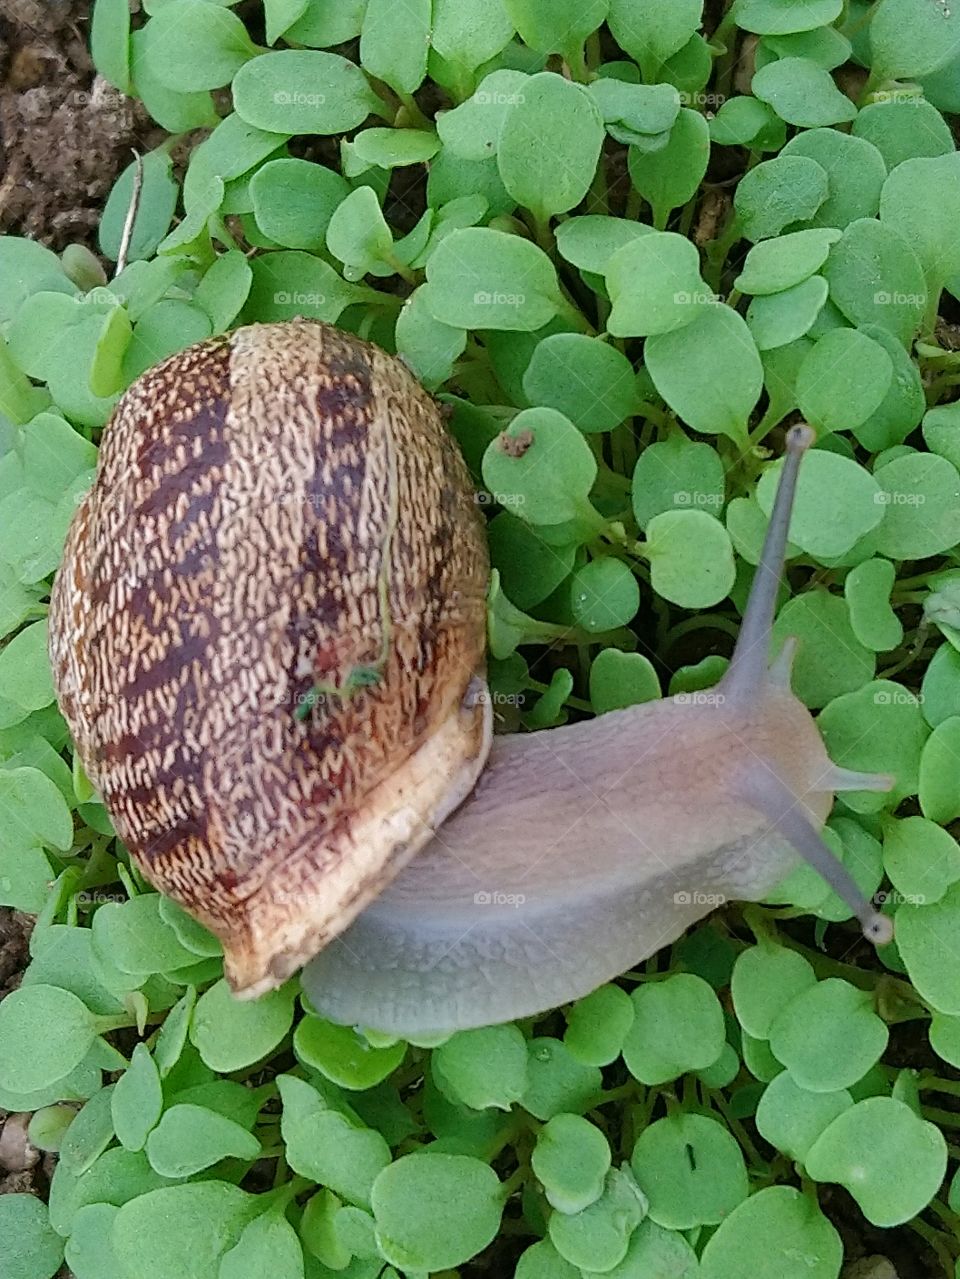 Snail in autumn